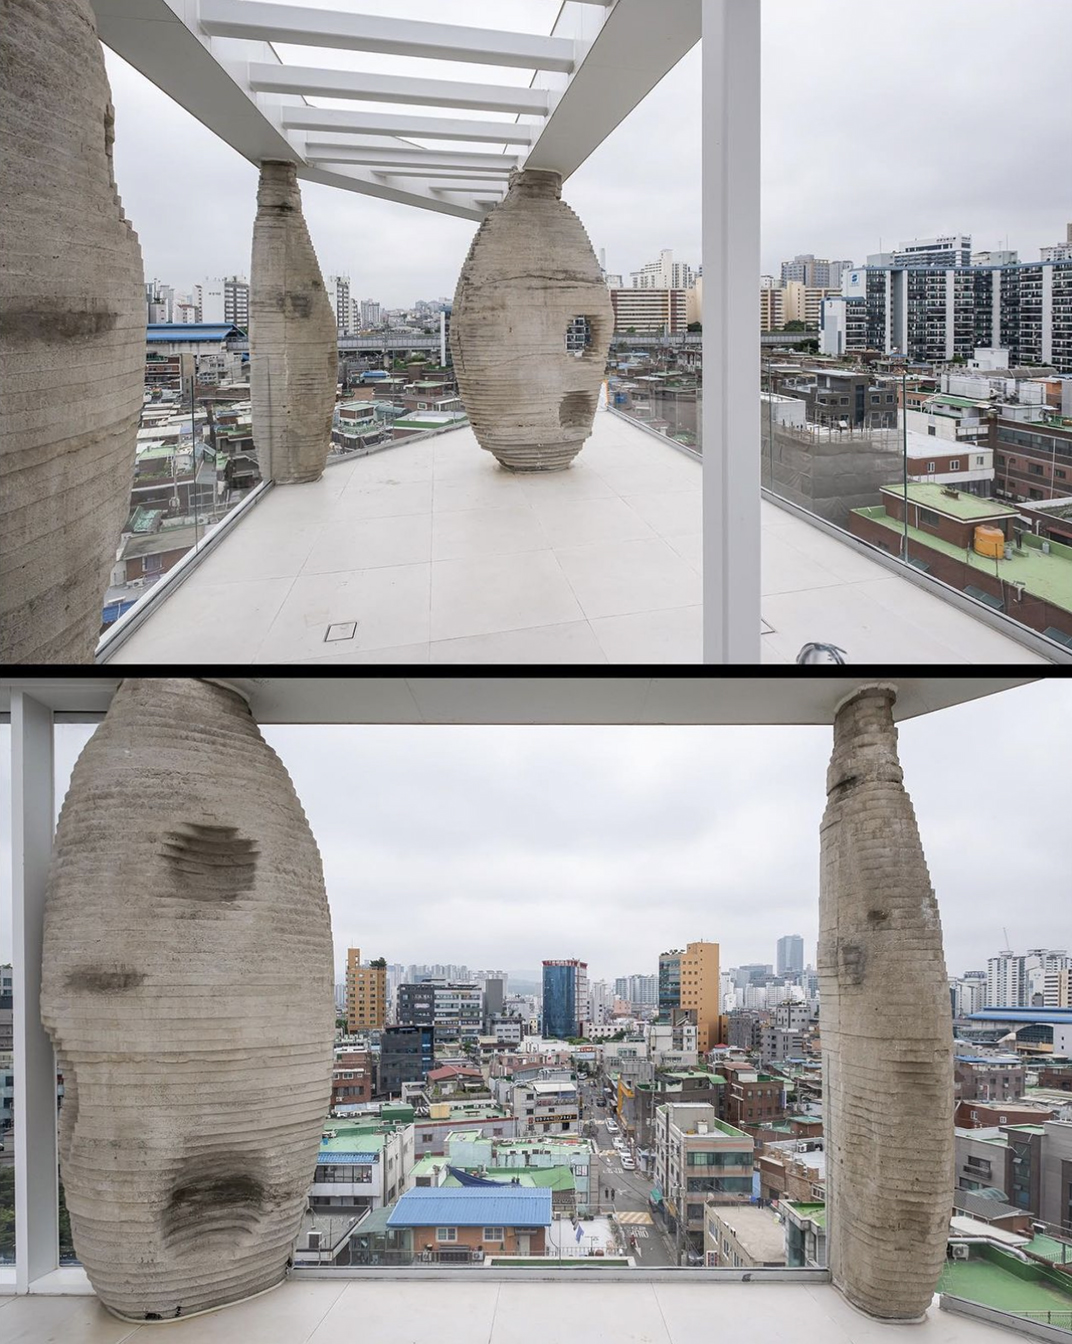 大林洞巨型超现实的石头咖啡馆 韩国 首尔 北京 上海 珠海 广州 武汉 杭州 佛山 澳门 logo设计 vi设计 空间设计